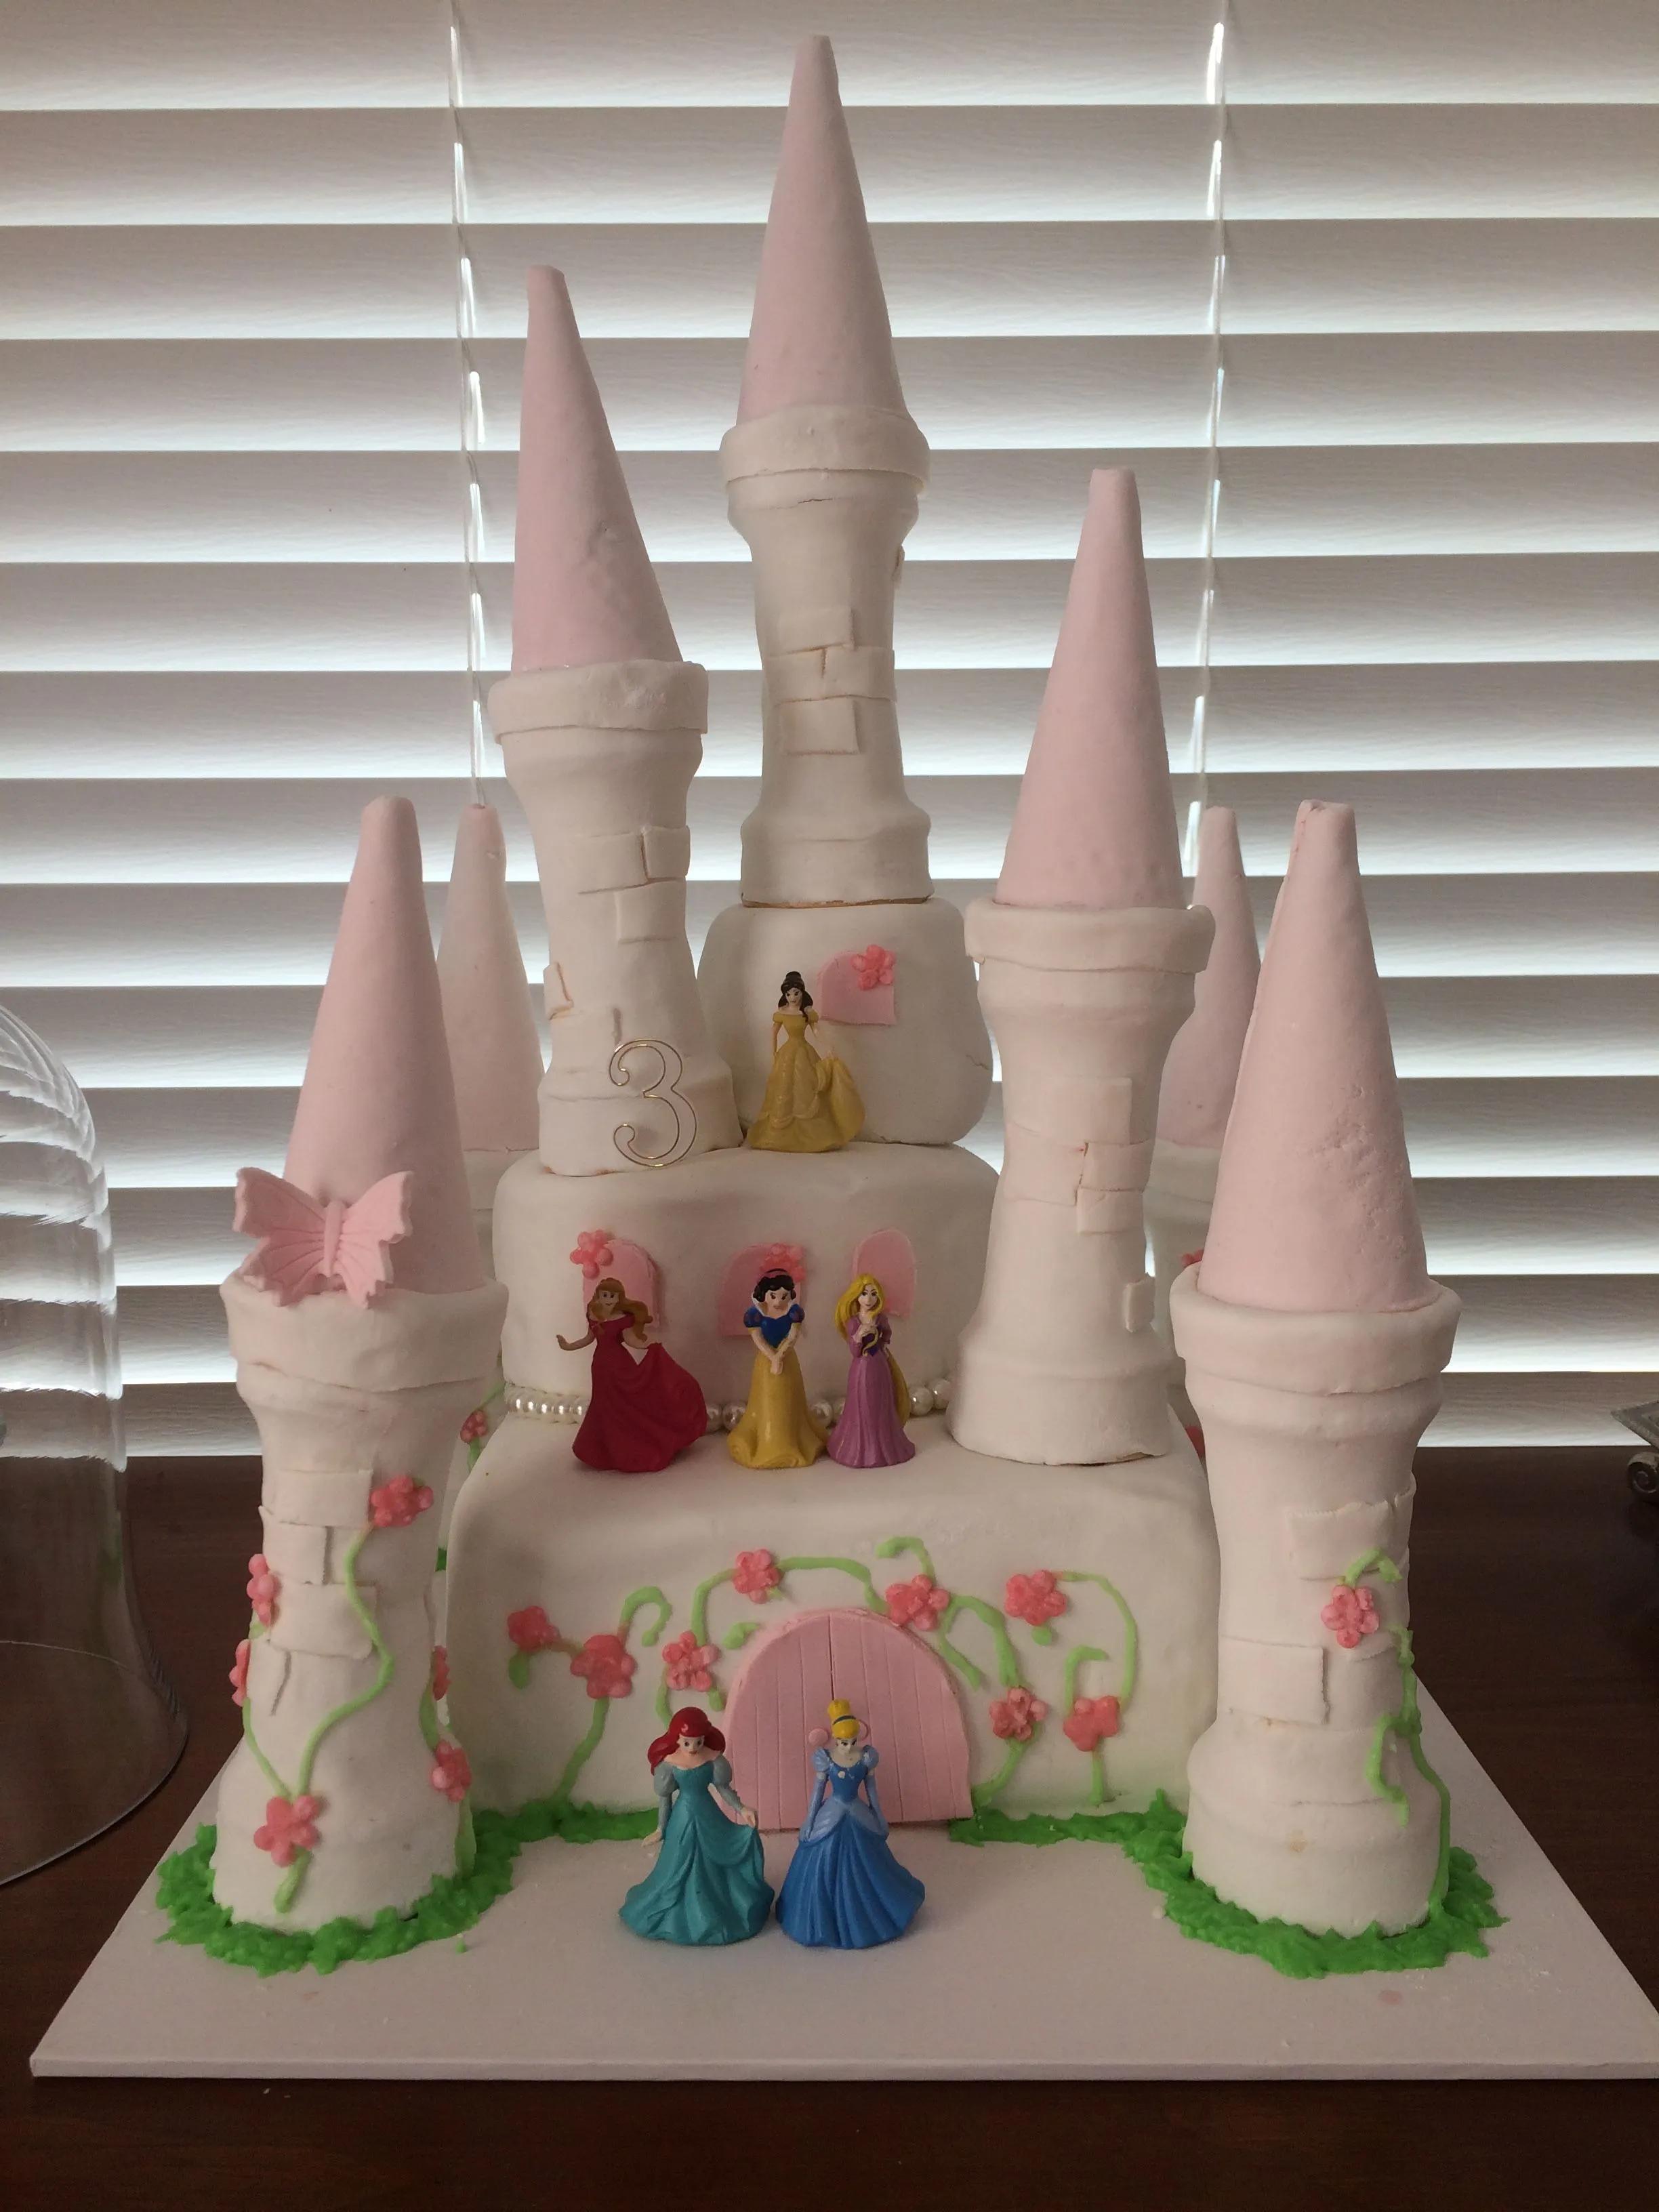 Disney princess castle cake | Disney princess cake, Princess castle ...